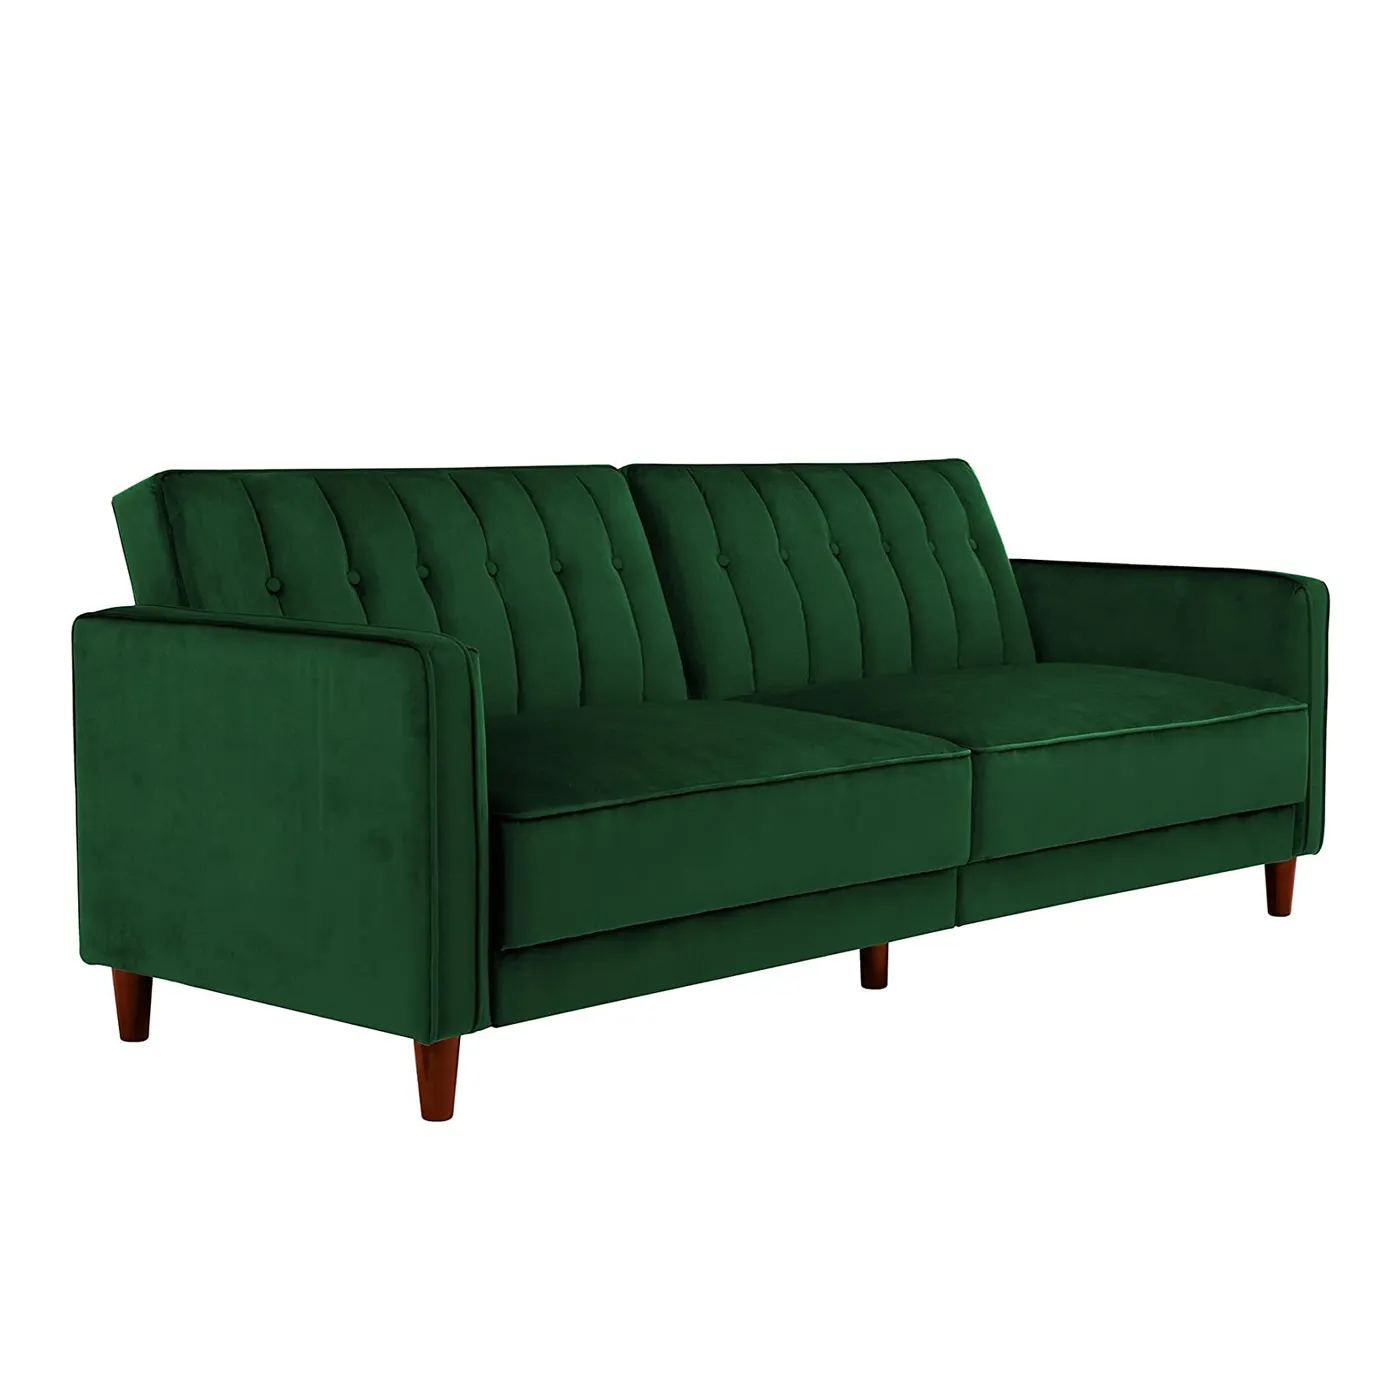 Canapé-lit en velours vert de style européen, canapé-lit avec tapisserie en plastique, pas cher